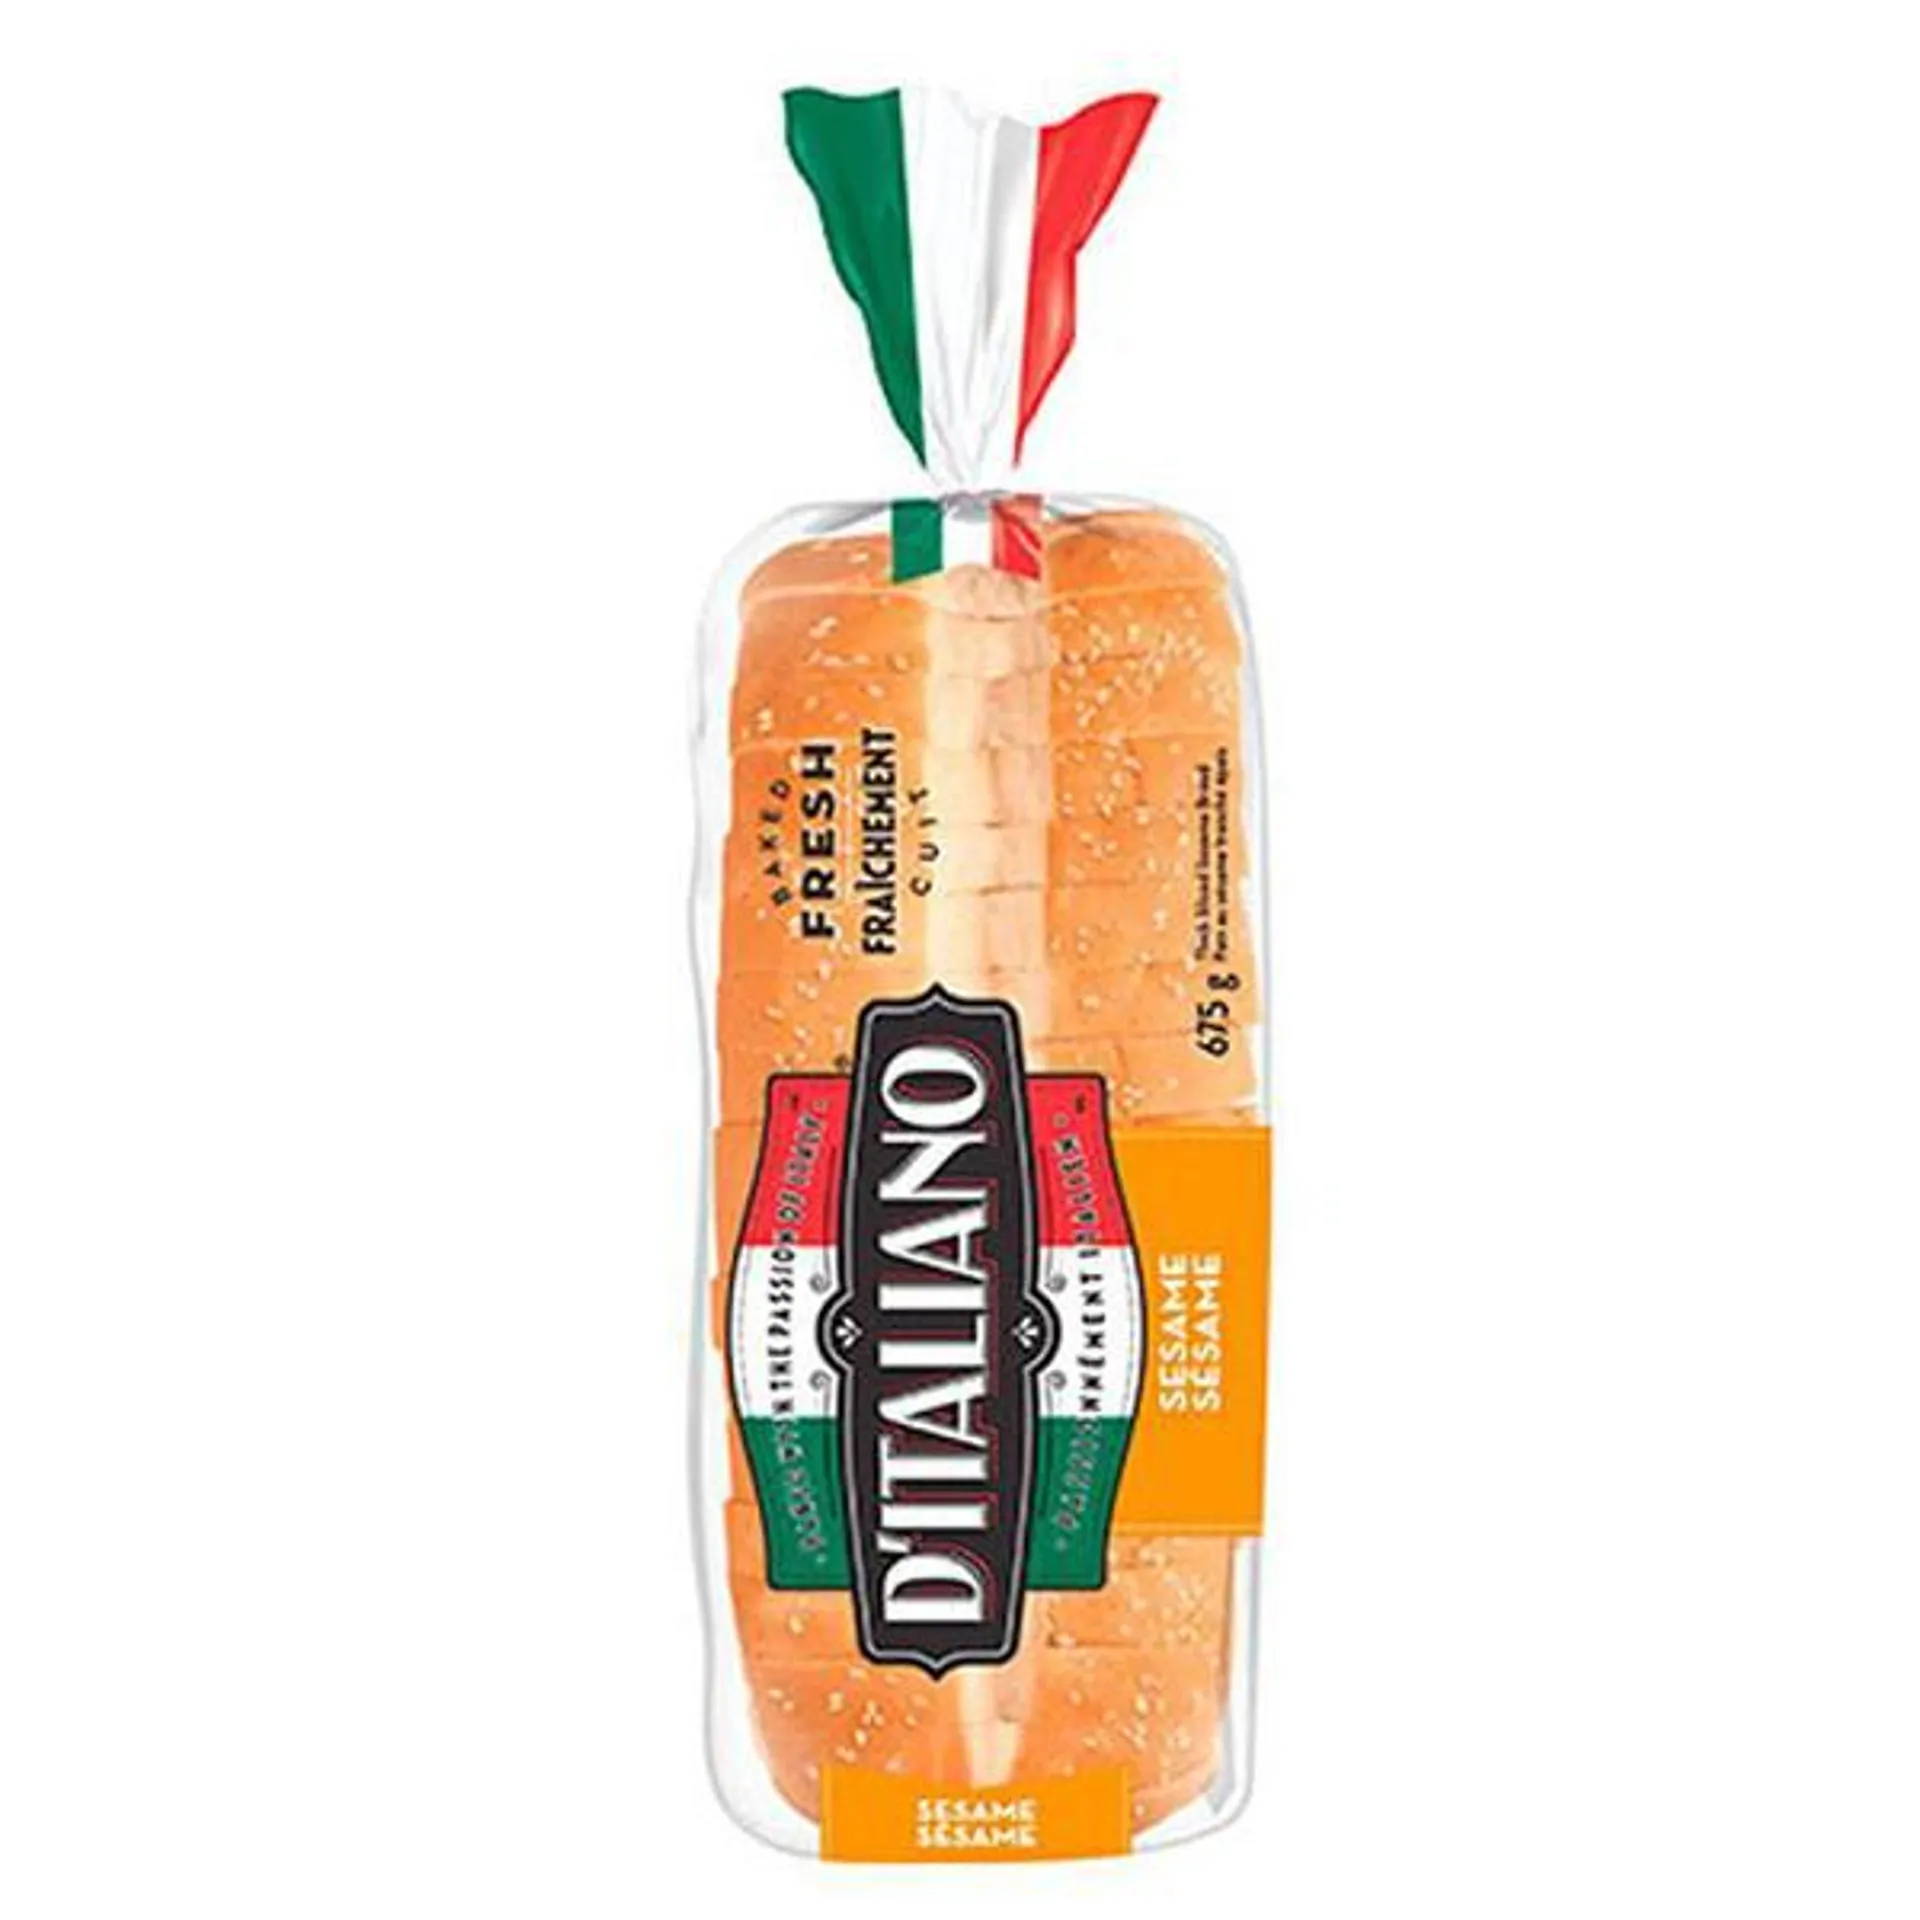 D'Italiano Sesame Bread 675g